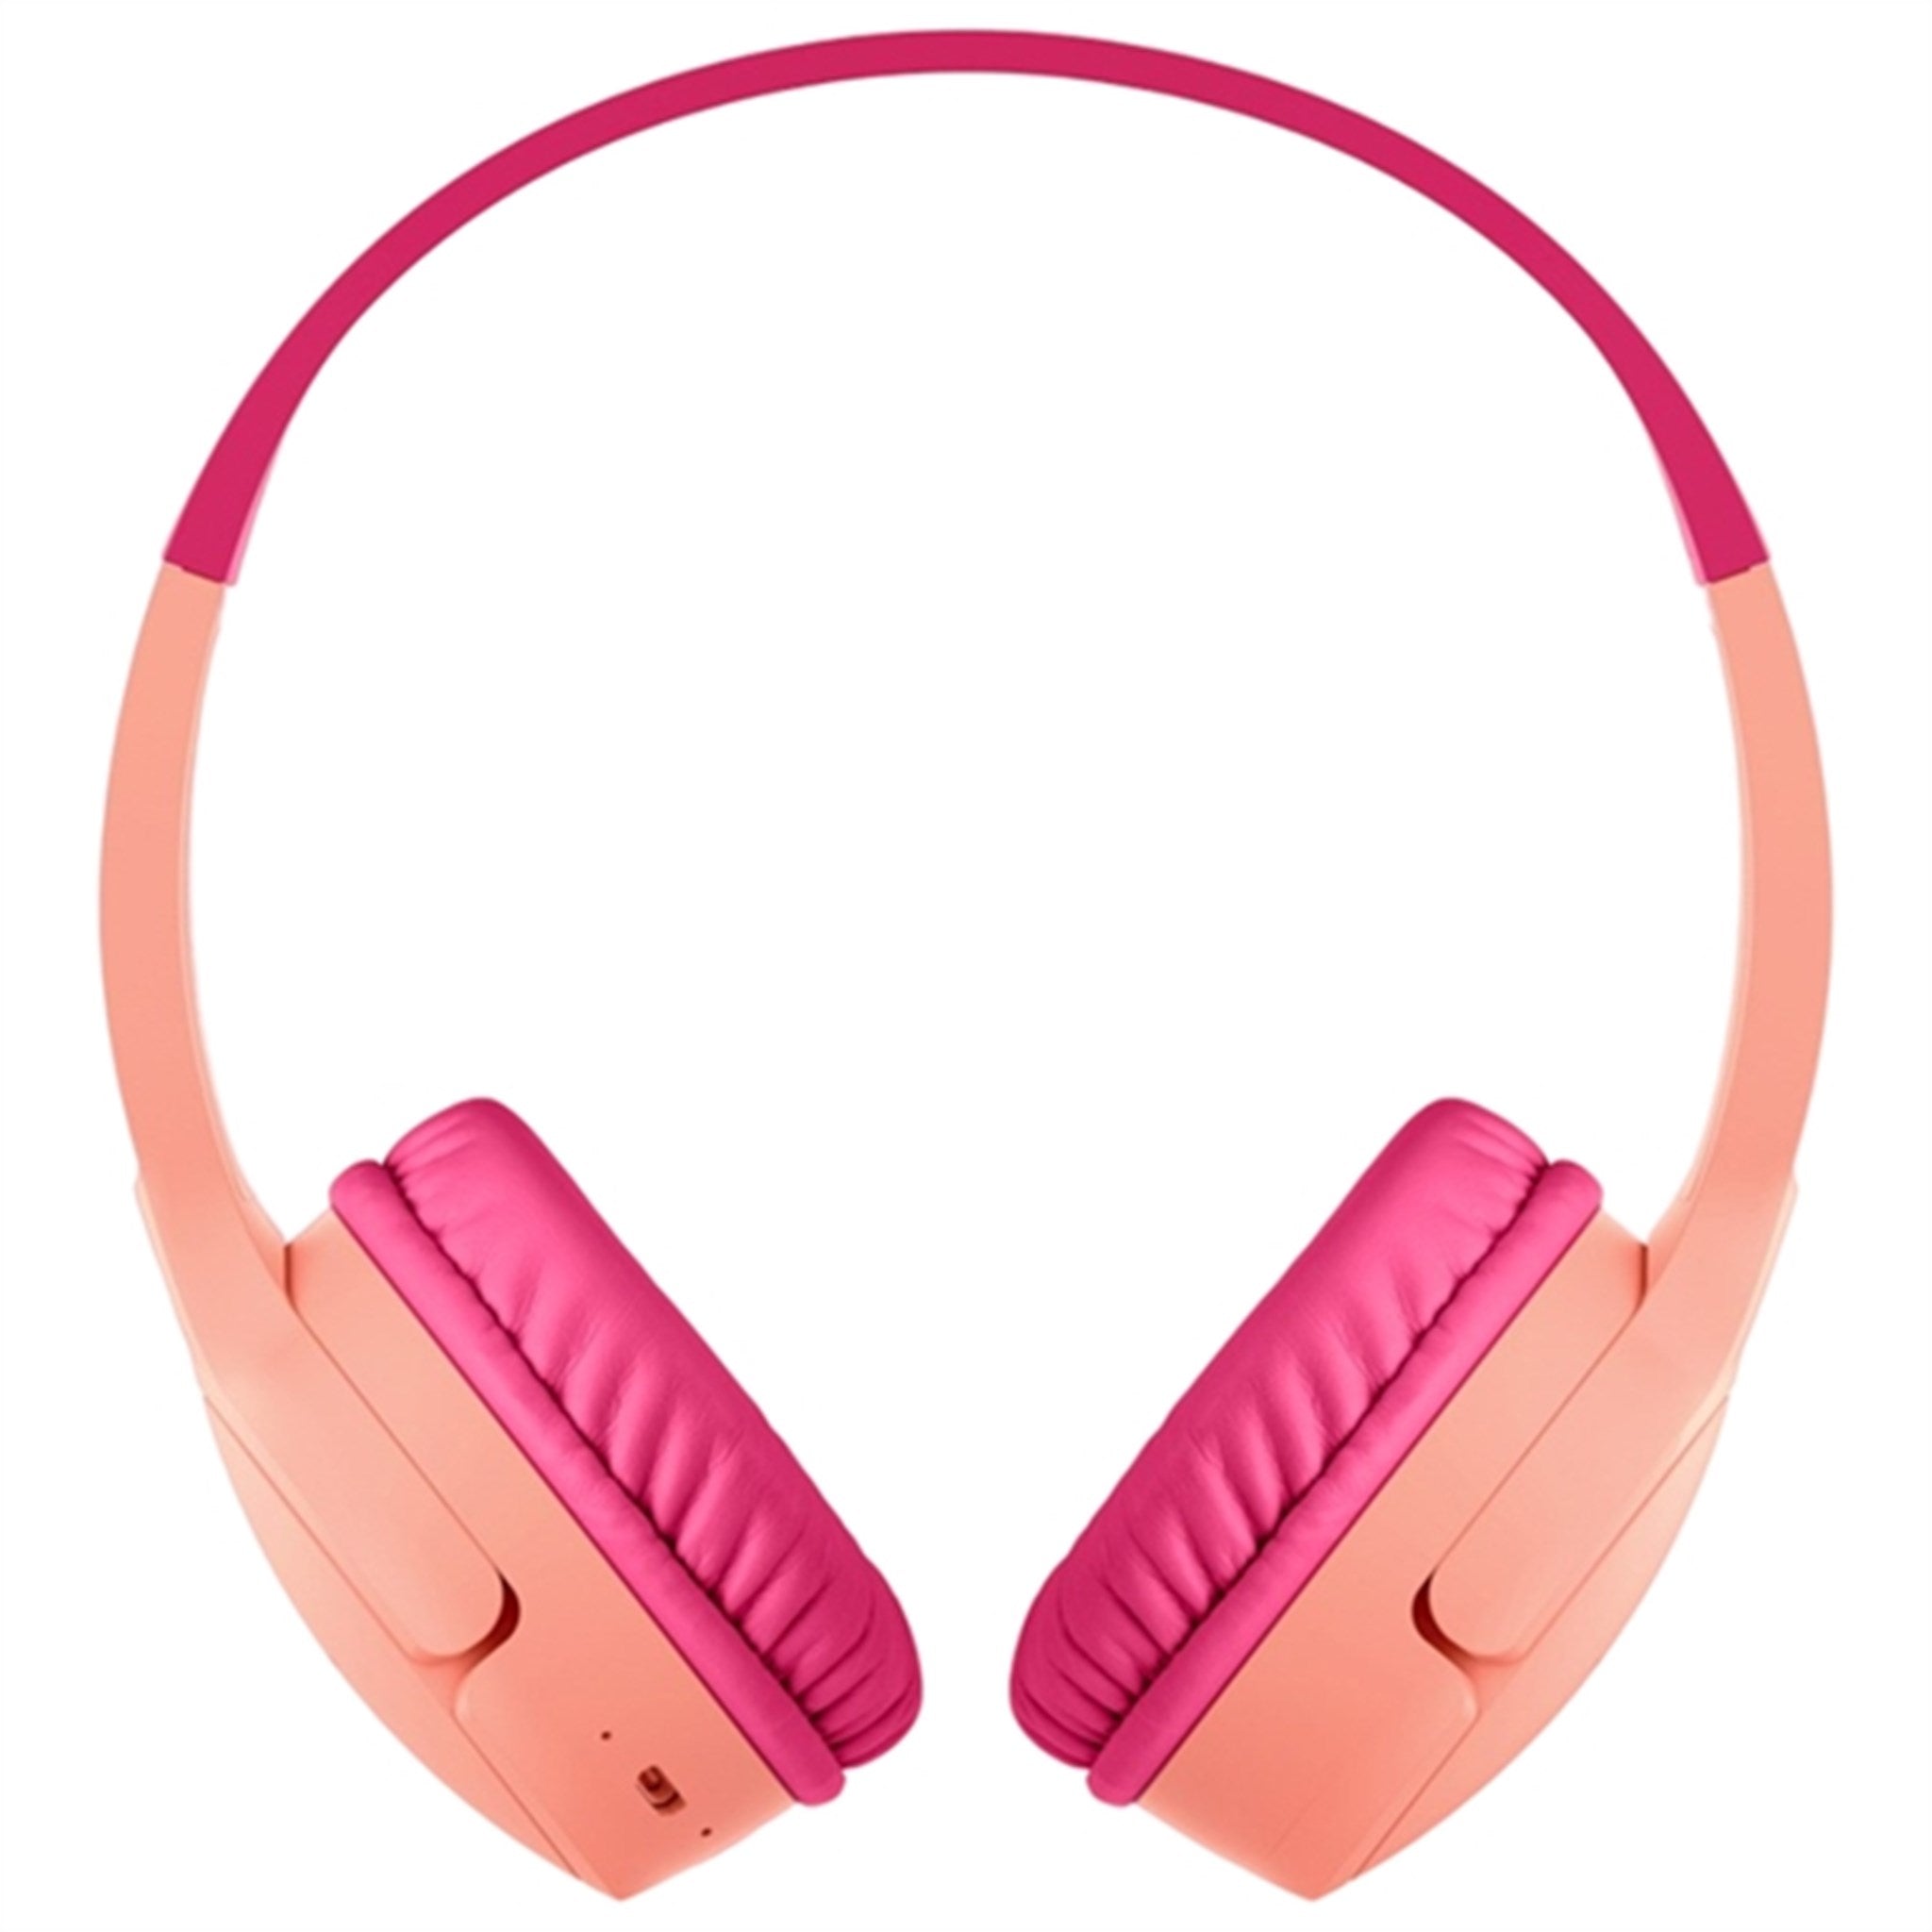 Belkin SOUNDFORM Mini Wireless On-Ear Headphones Pink